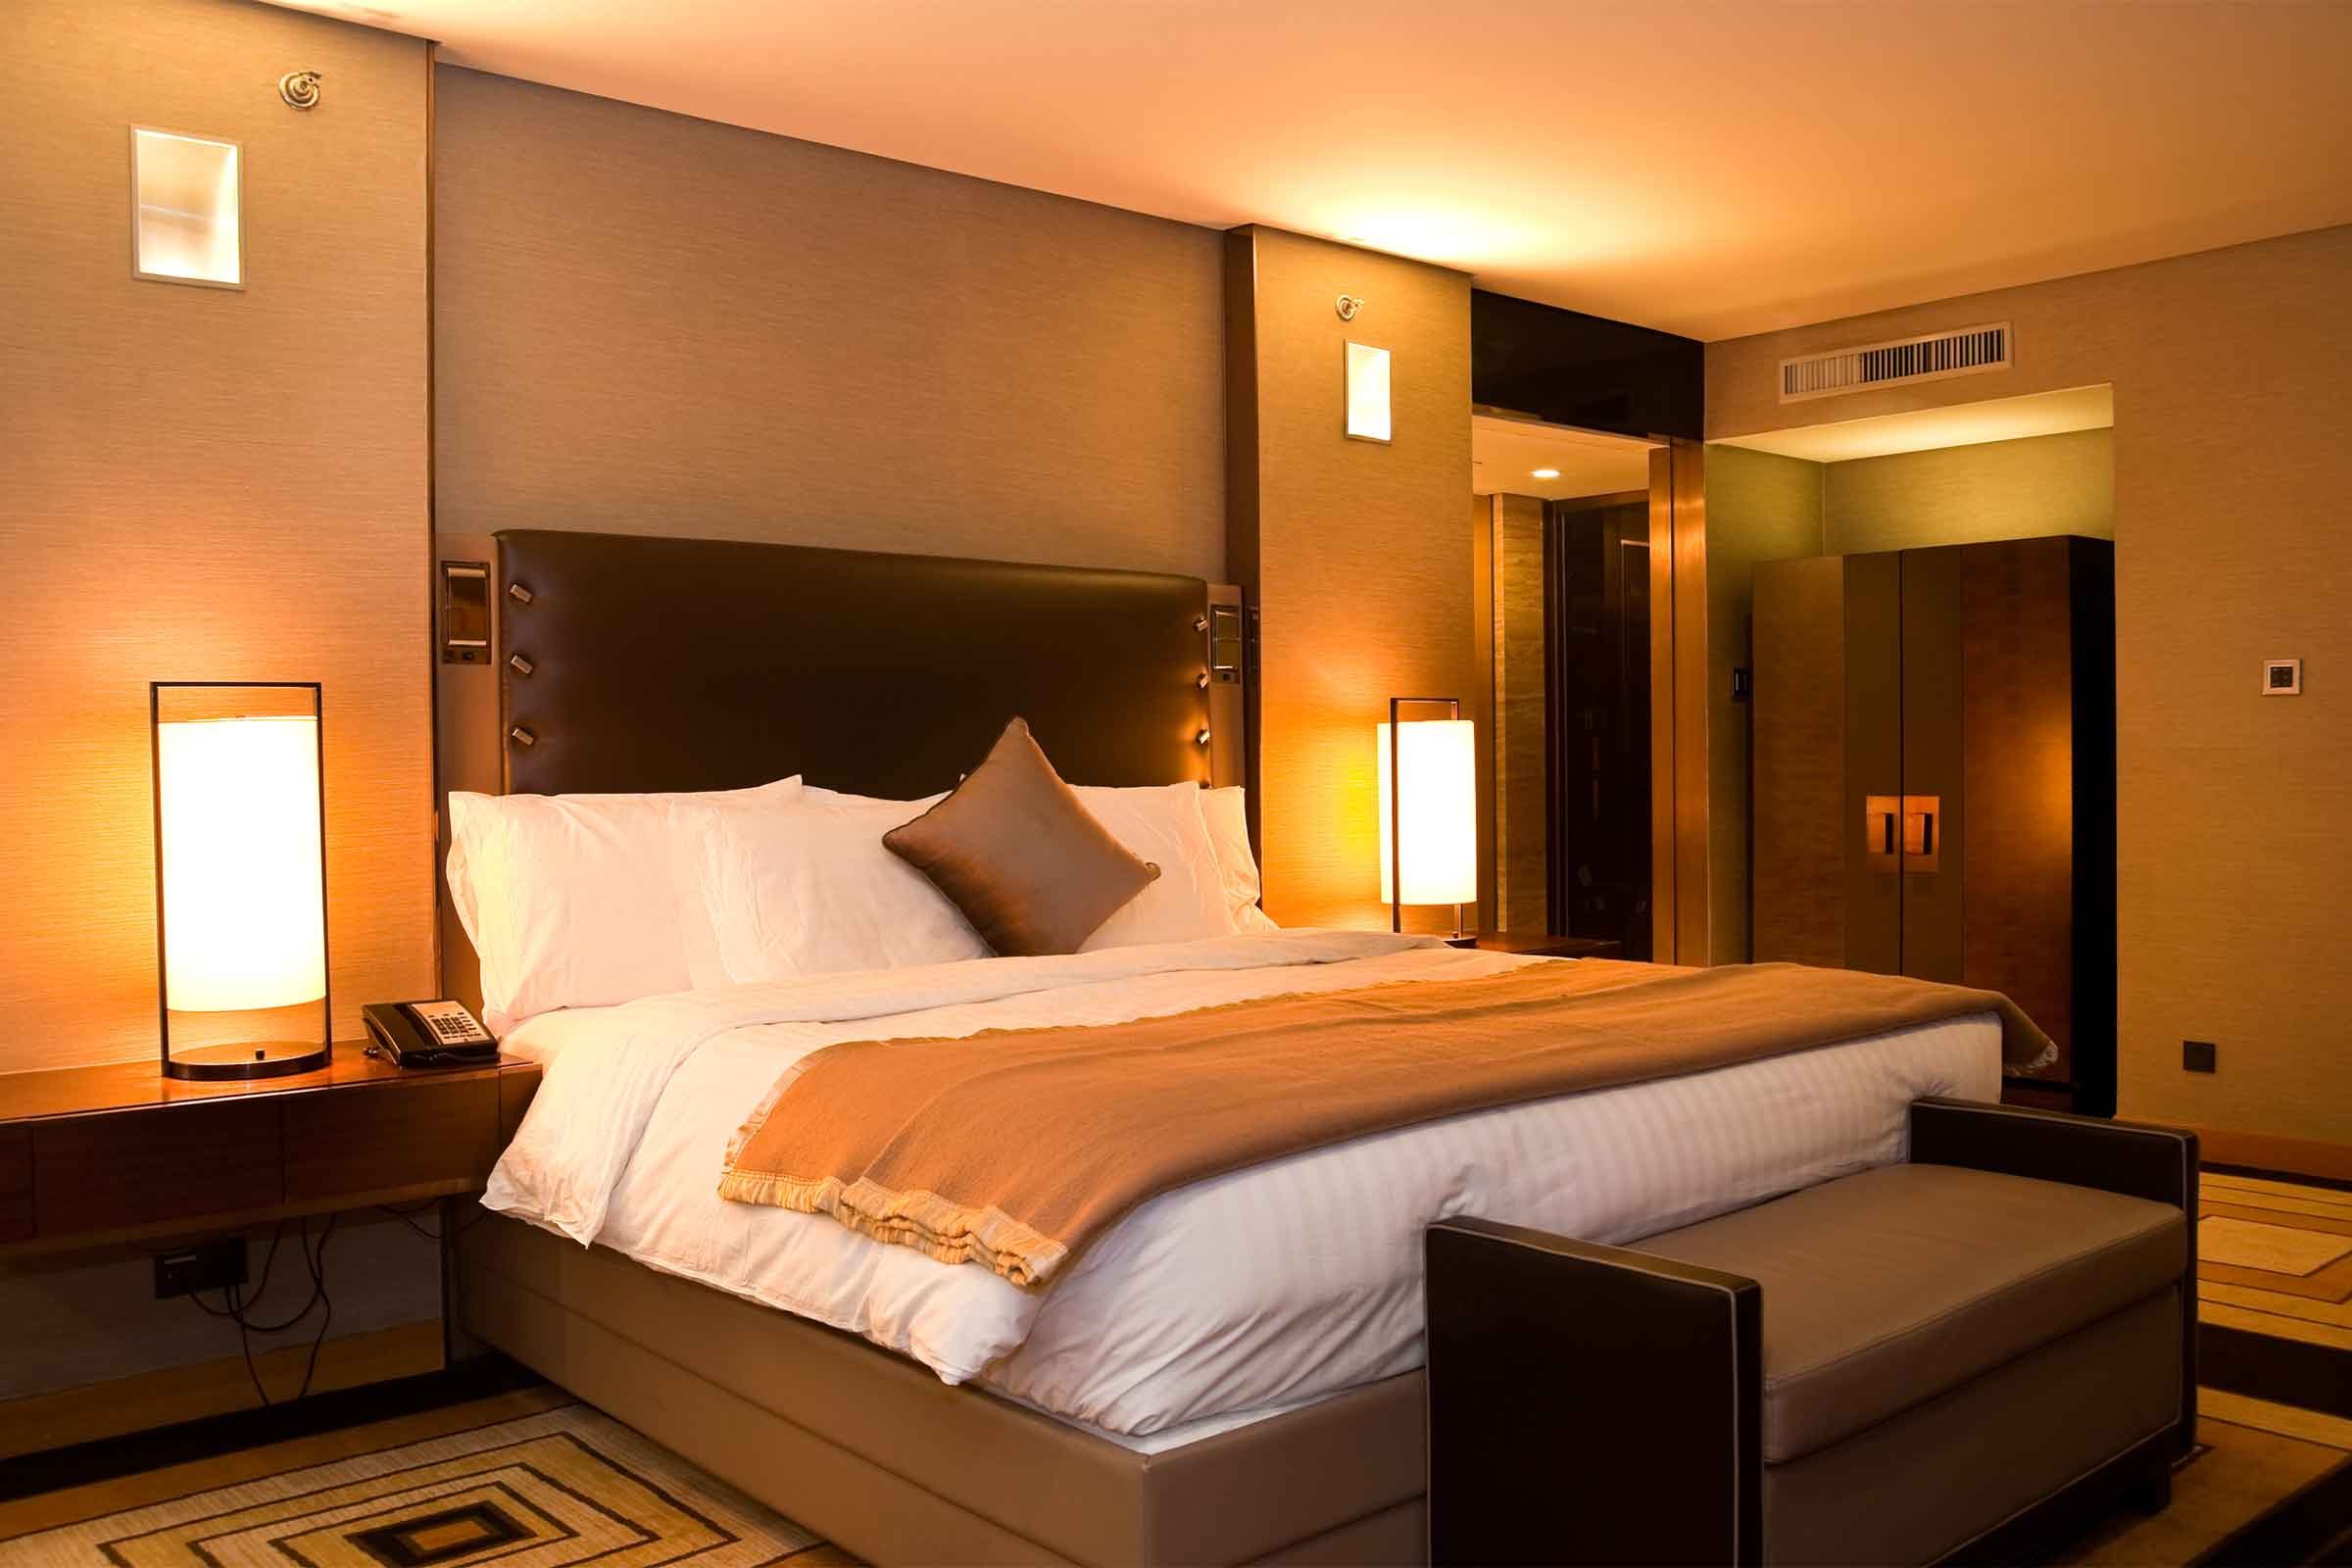 Copie estes 16 truques de decoração de quartos de hotel para tornar sua casa totalmente adorável 